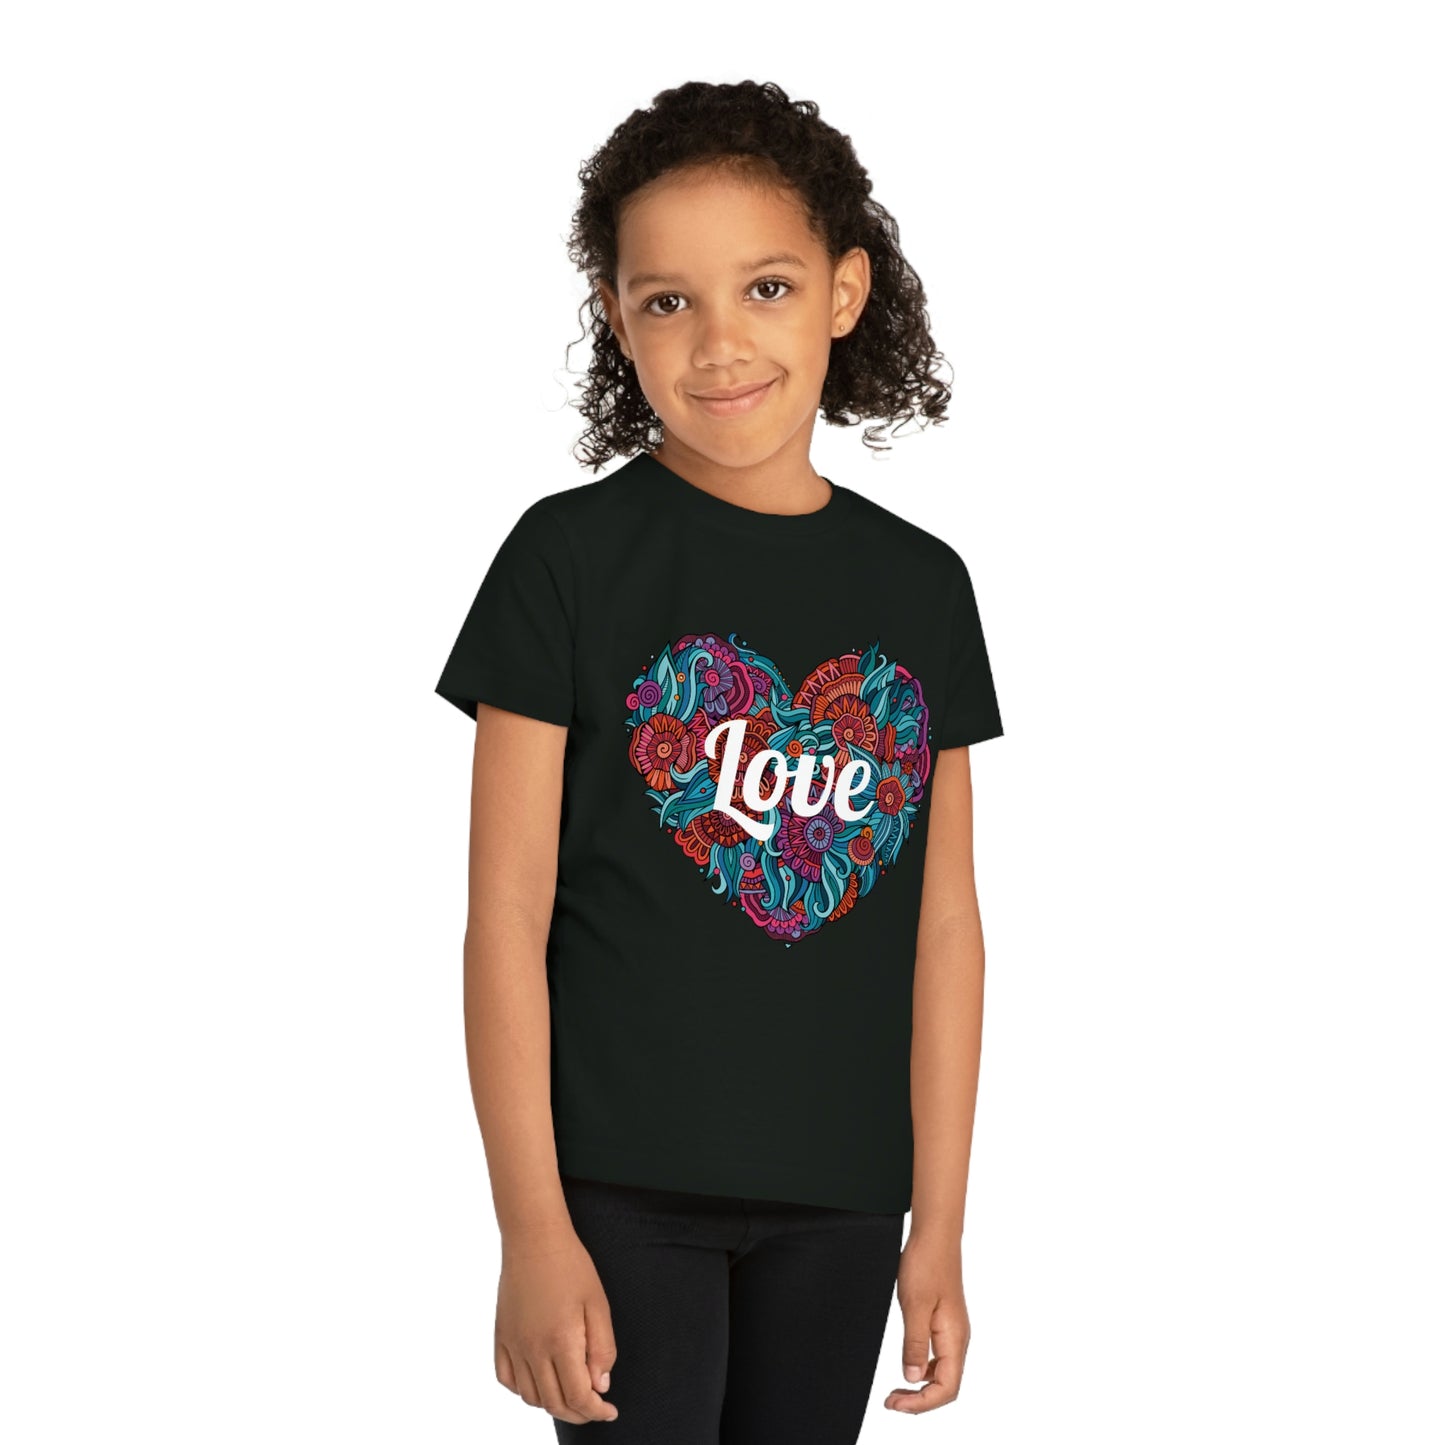 Word Art Collection - Kids' T-Shirt - Love, Heart, Flowers